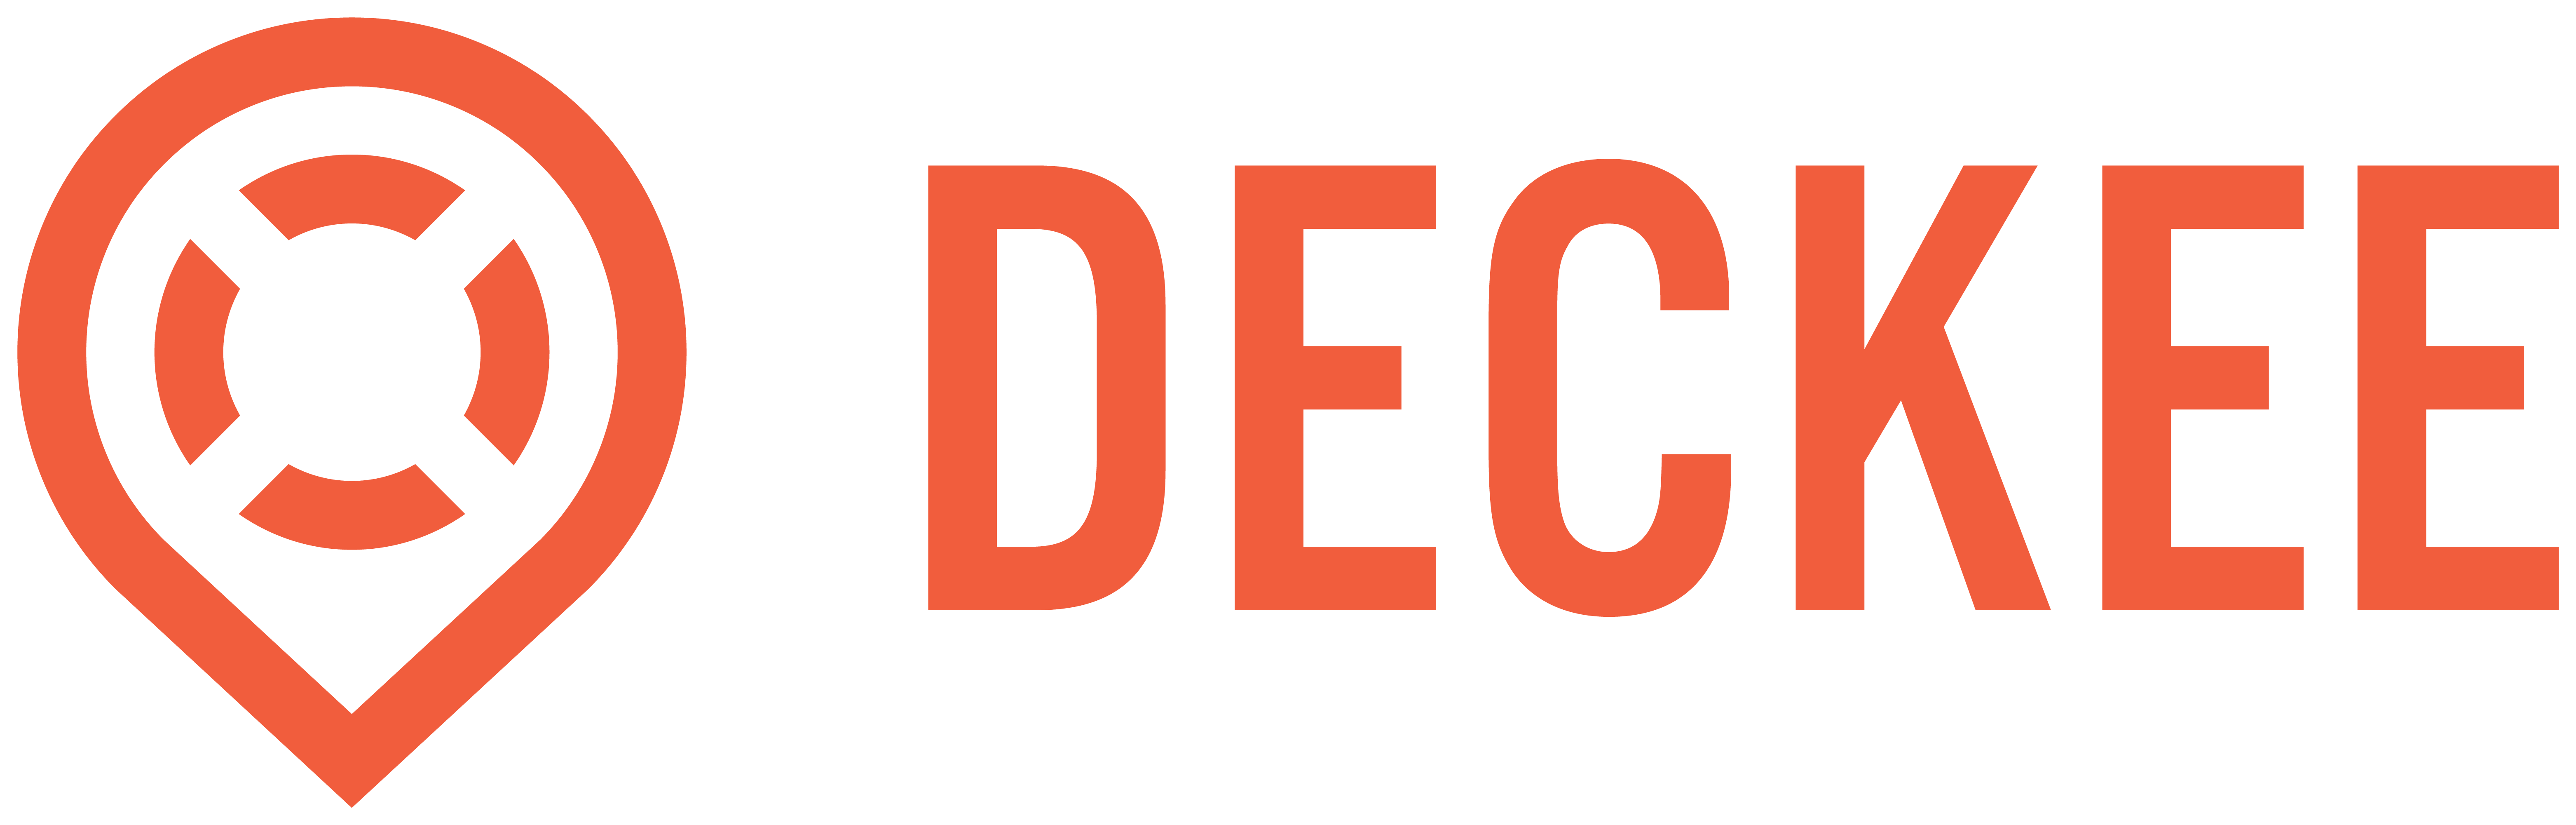 Deckee Logo